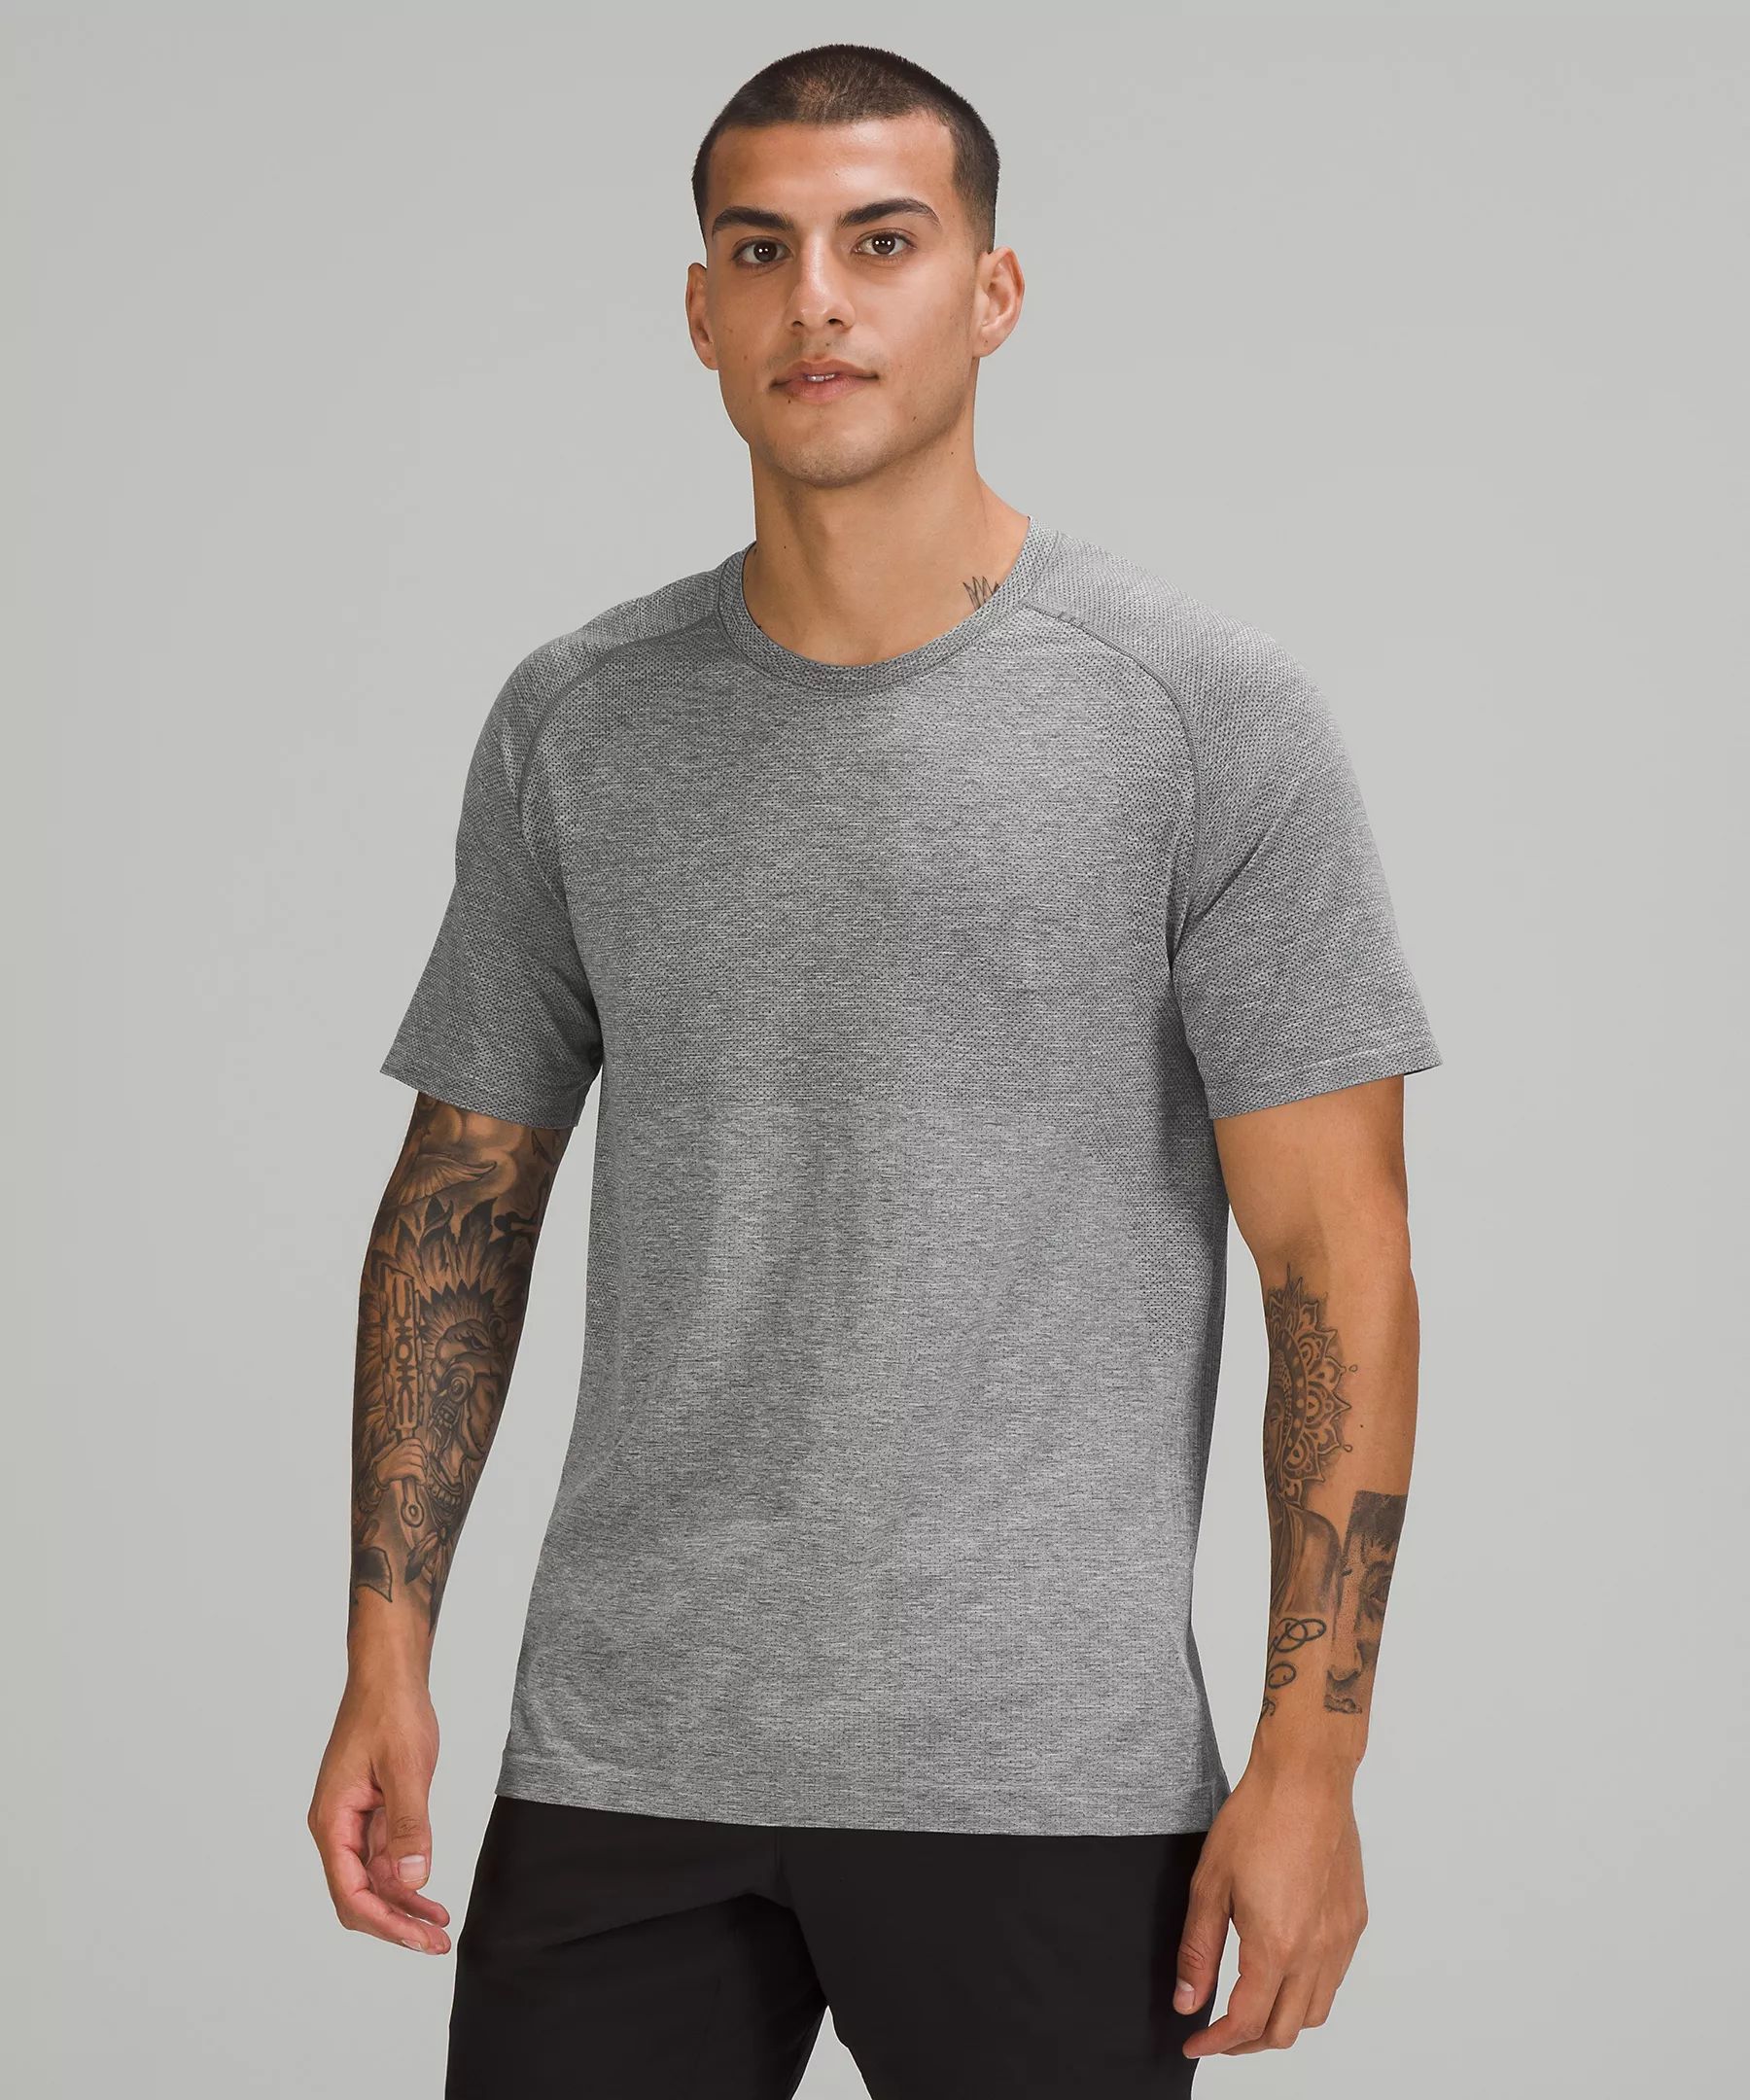 Metal Vent Tech Short Sleeve Shirt 2.0 | Lululemon (US)